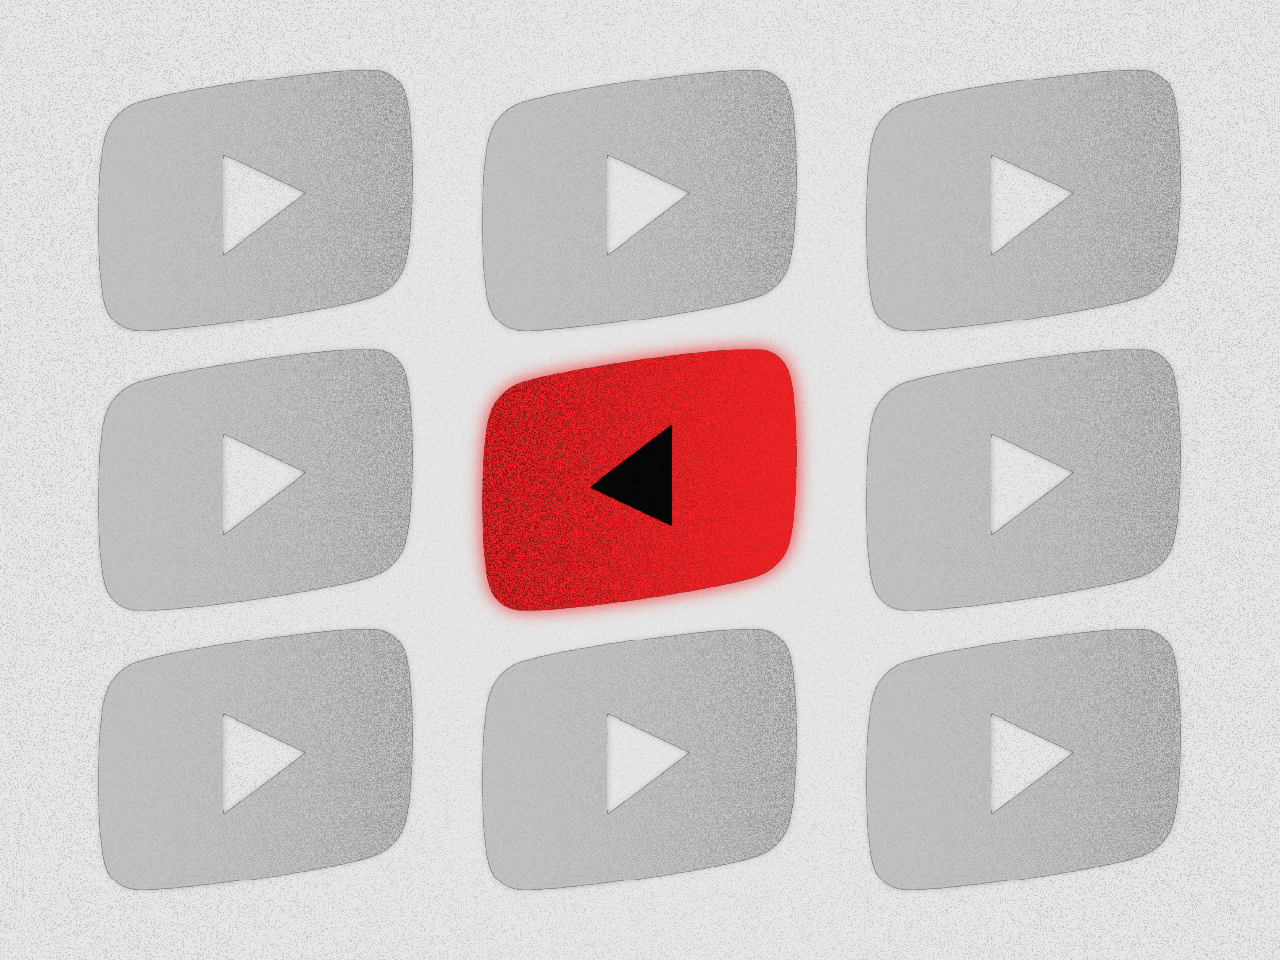 Imagem produzida digitalmente mostra 9 logos do Youtube em cinza e branco. O logo ao centro está colorido em vermelho e p